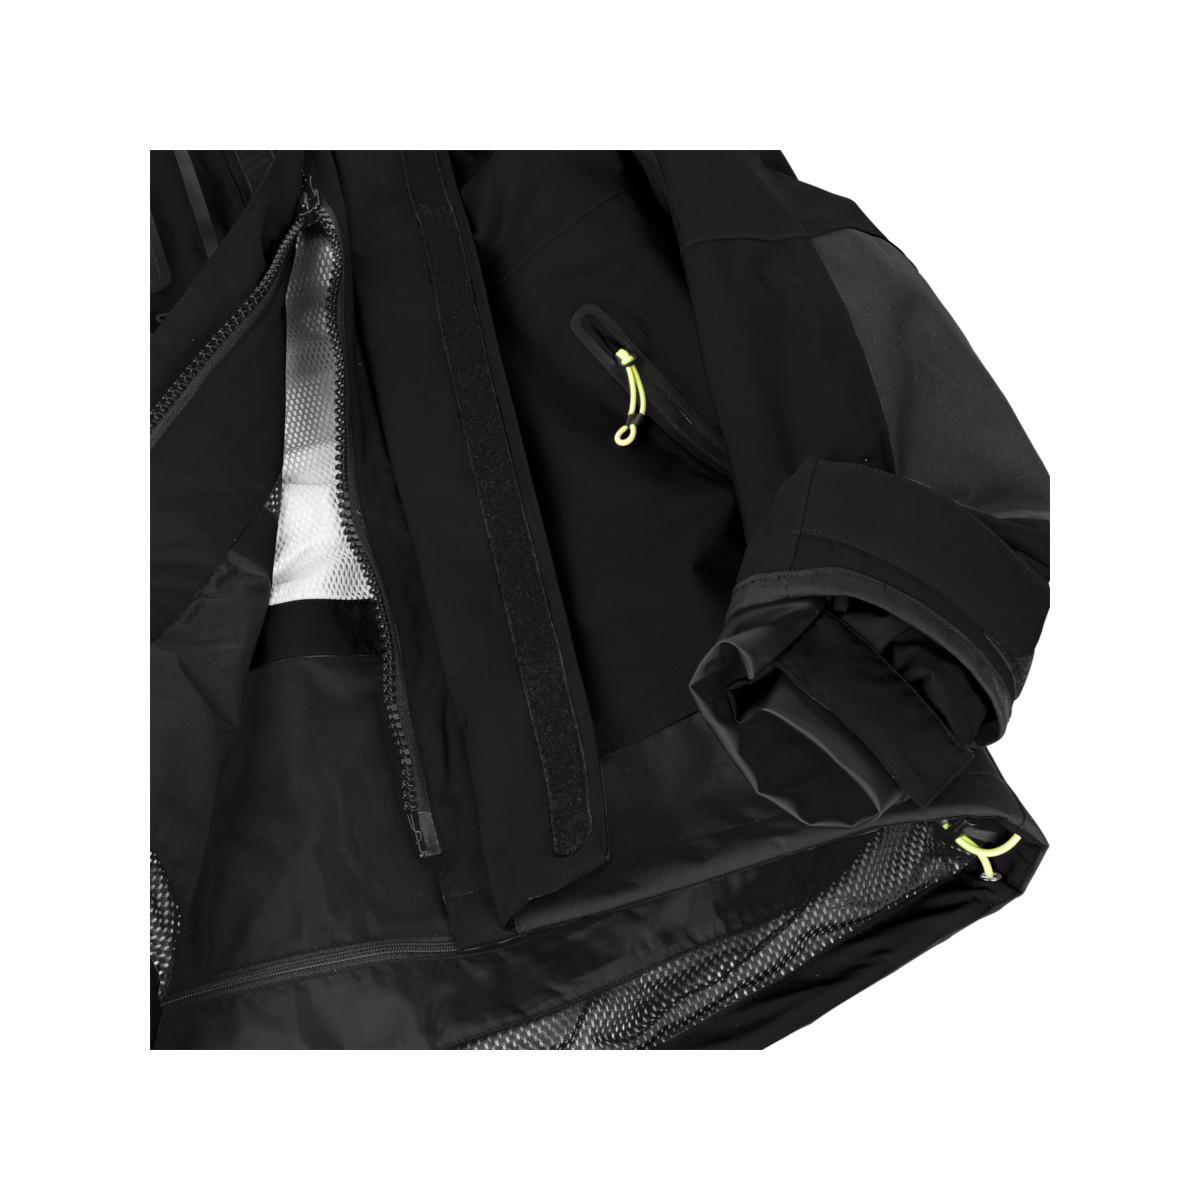 12skipper Magellan veste de quart hauturière, unisexe - noir, taille XL